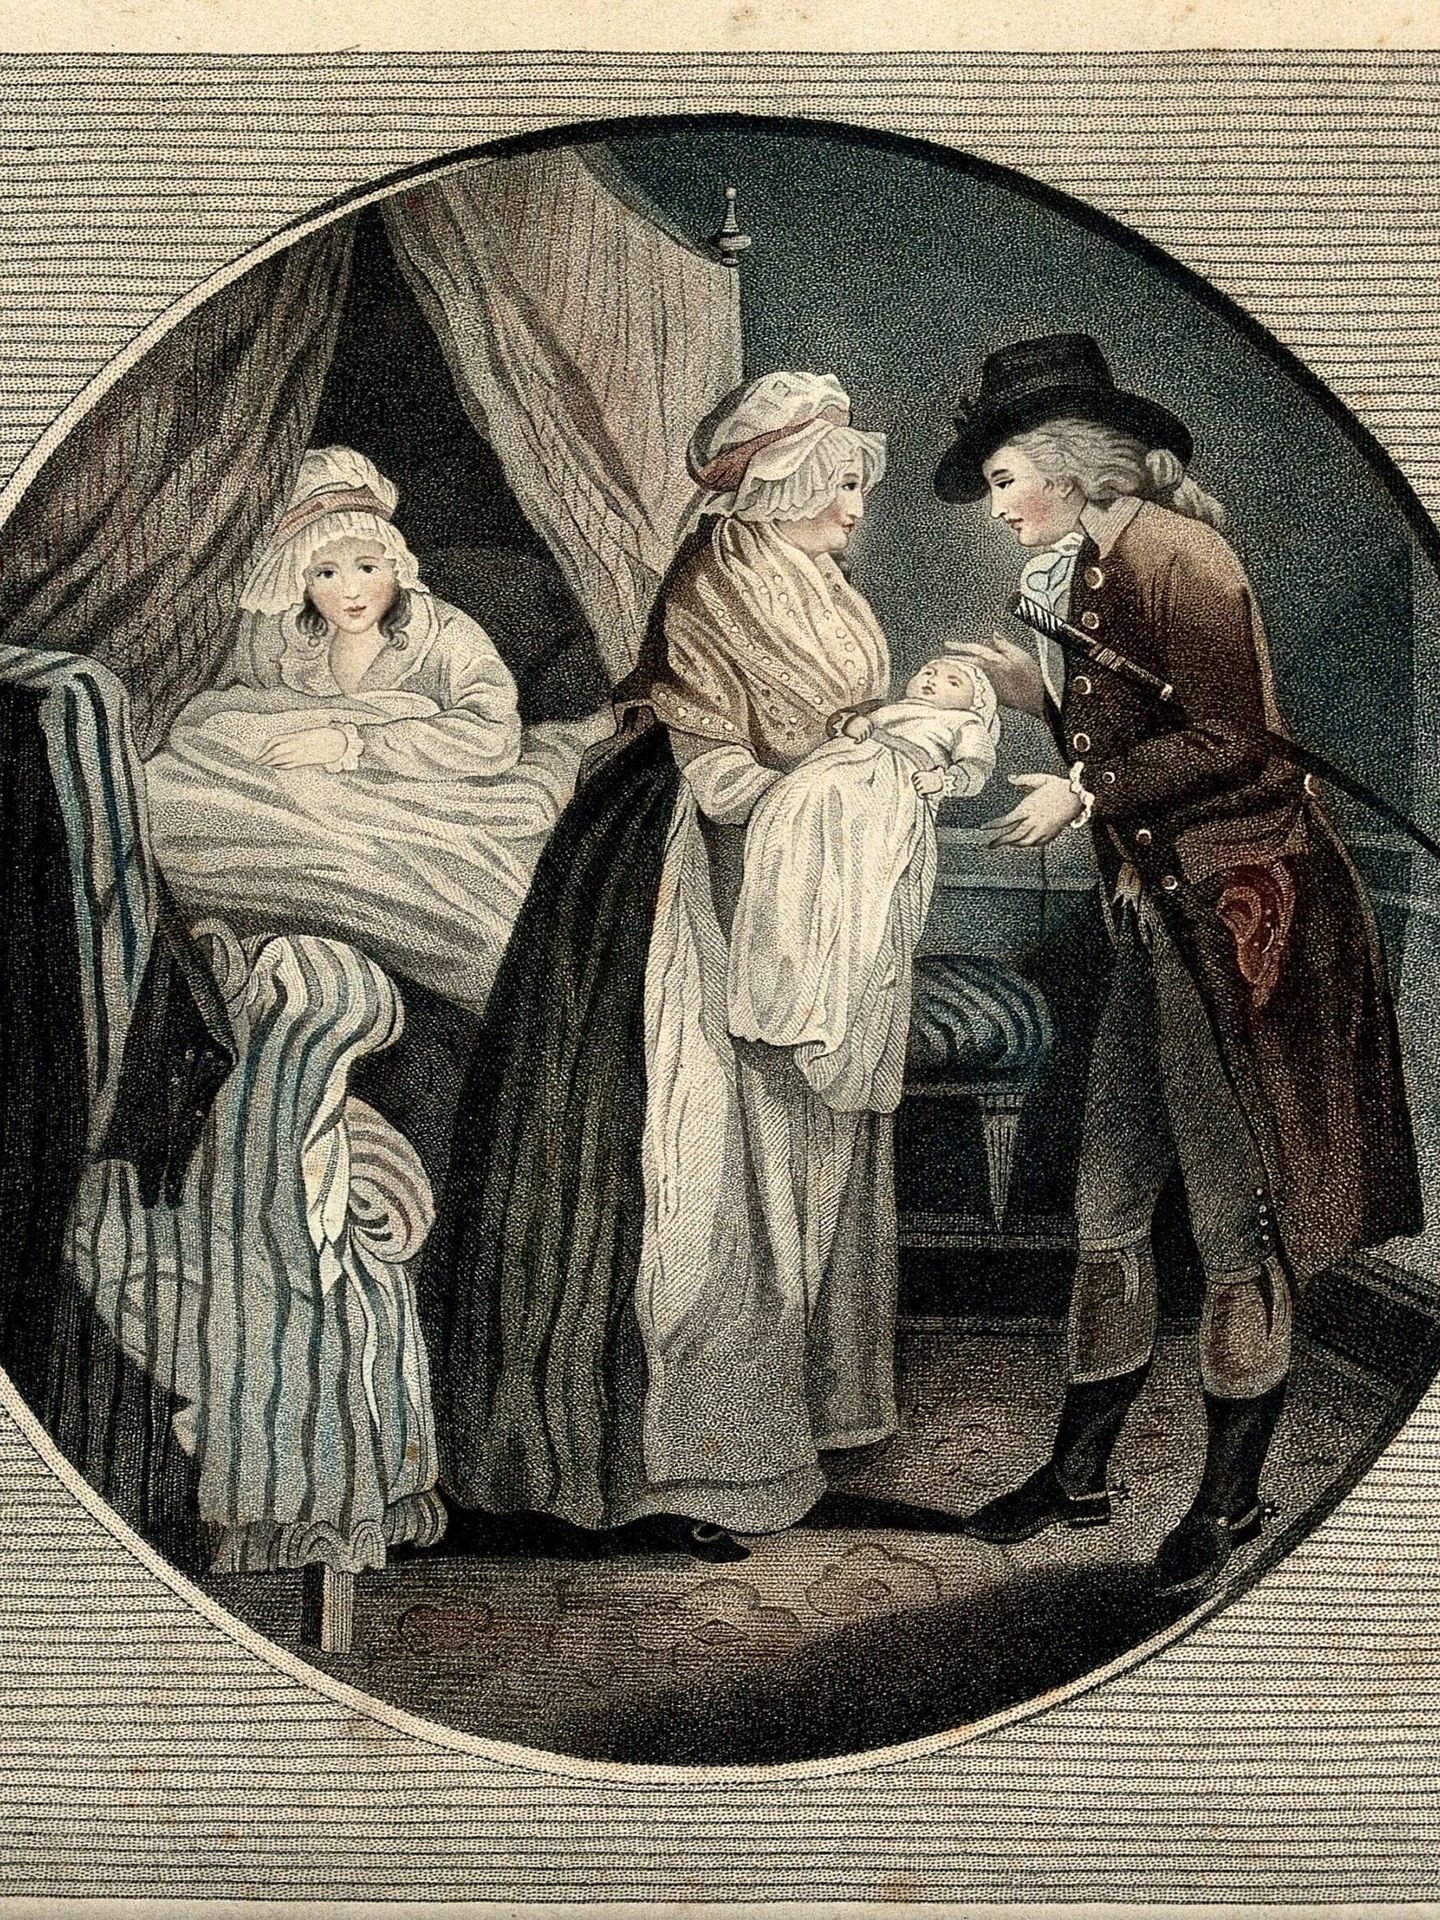 Matrona enseñando el bebé al padre (hacia 1800)